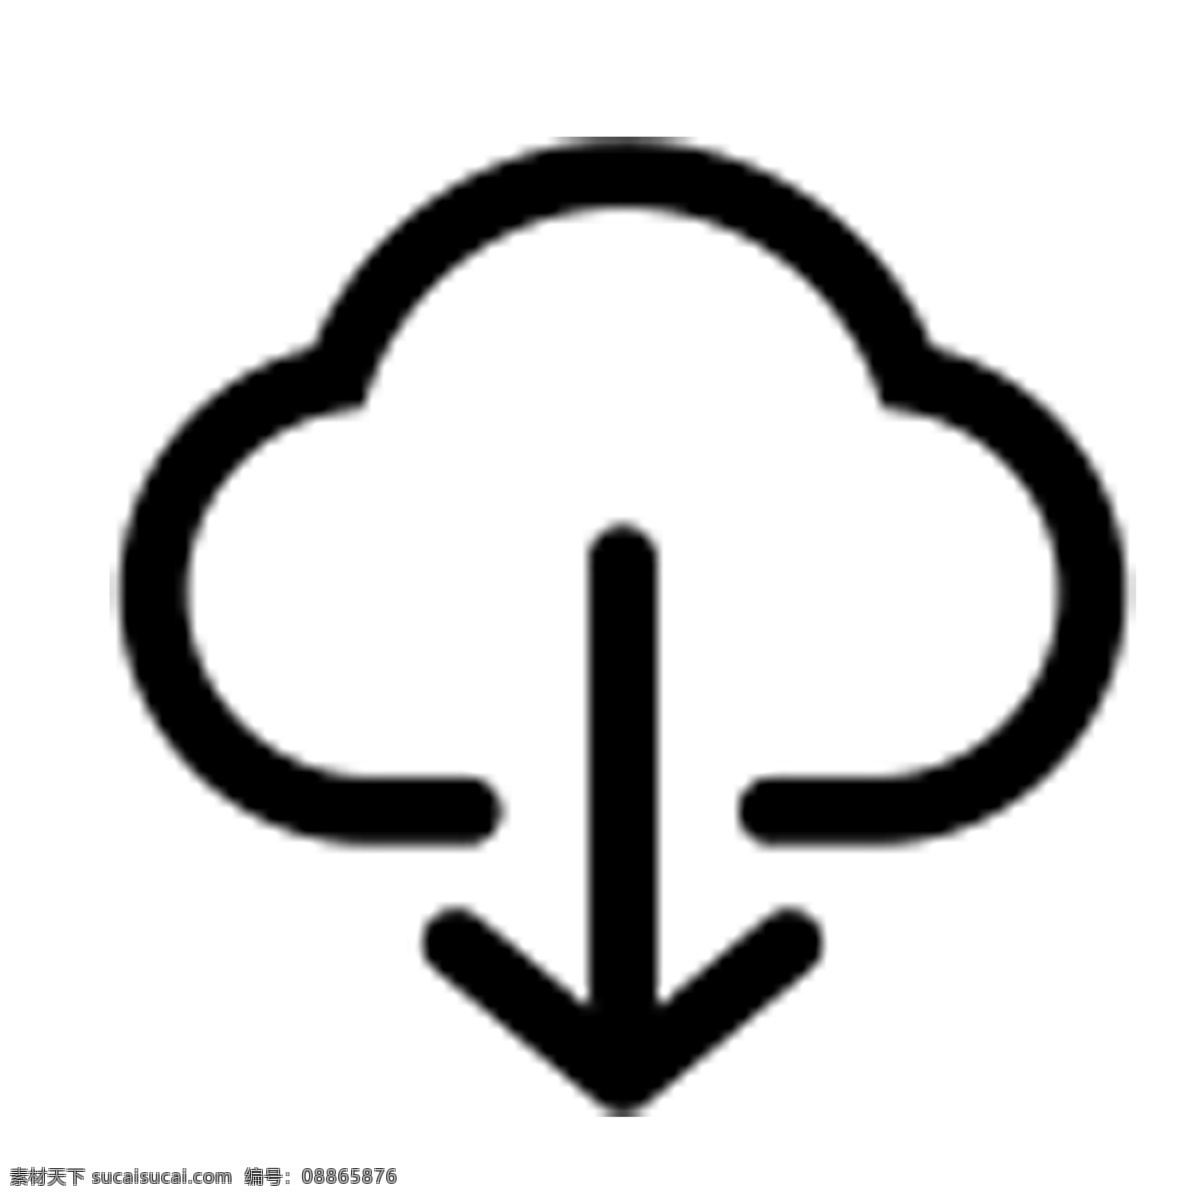 云 卡通 图标 箭头 云下载 手机图标 电子图标 图标设计 网页图标设计